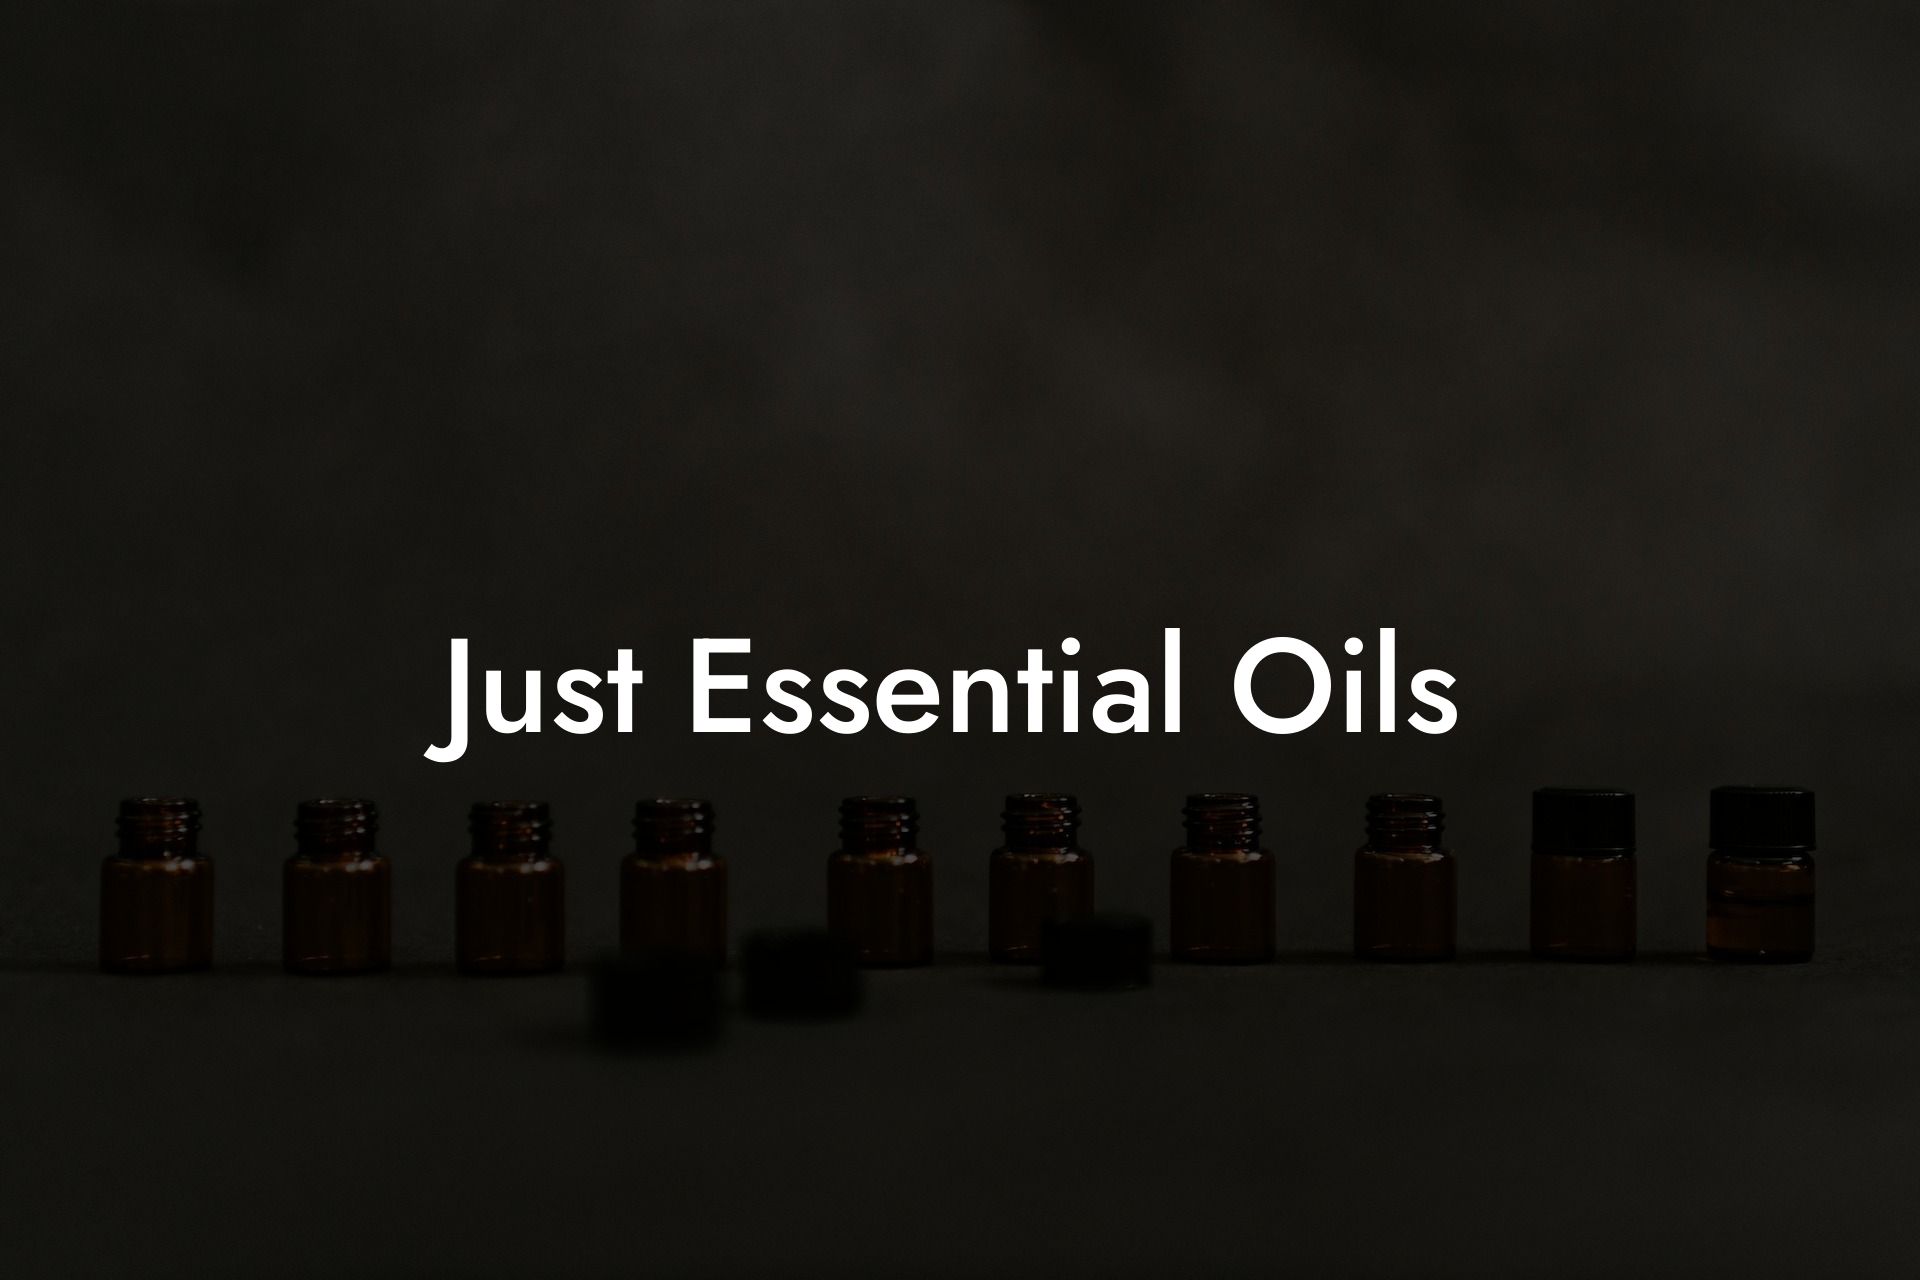 Just Essential Oils